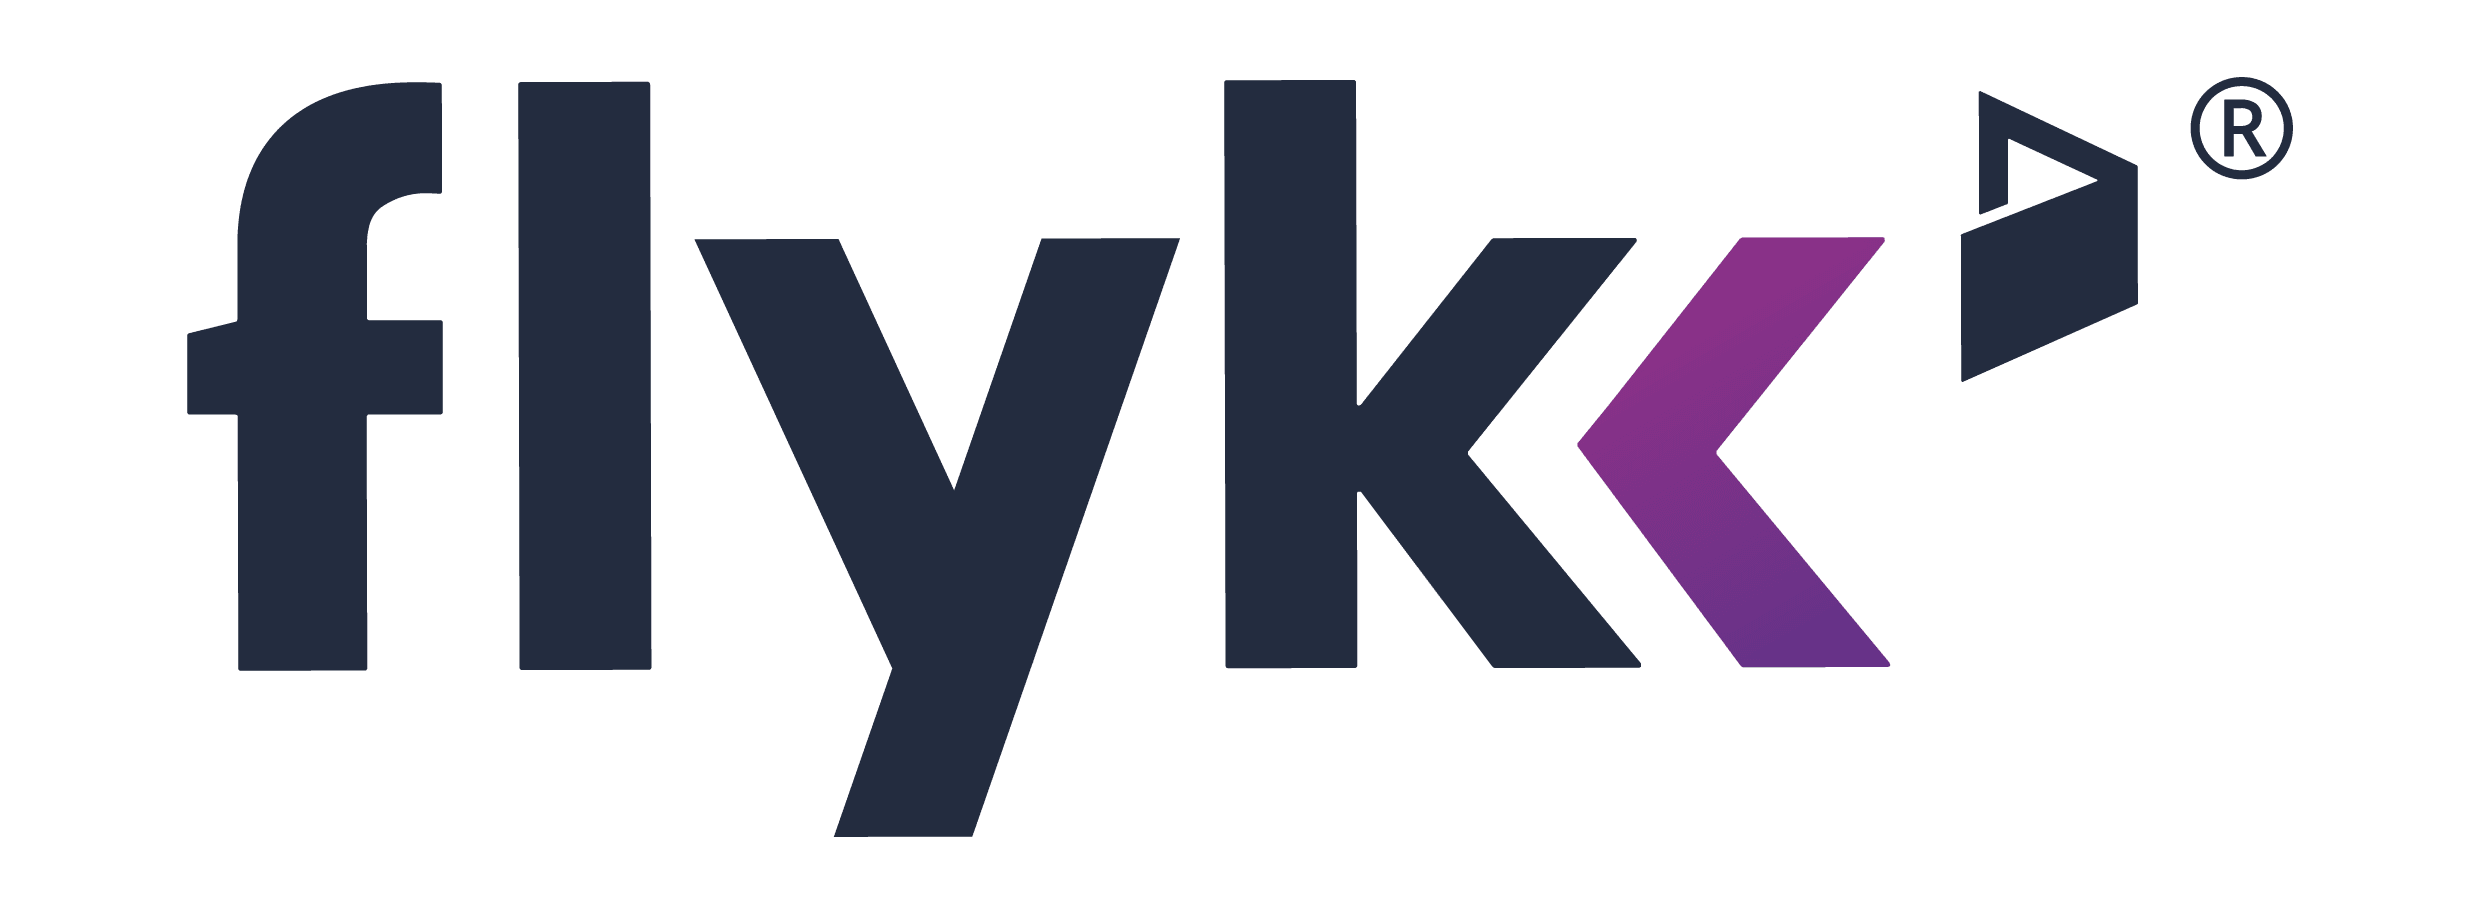 Los mejores casinos en línea que aceptan Flykk